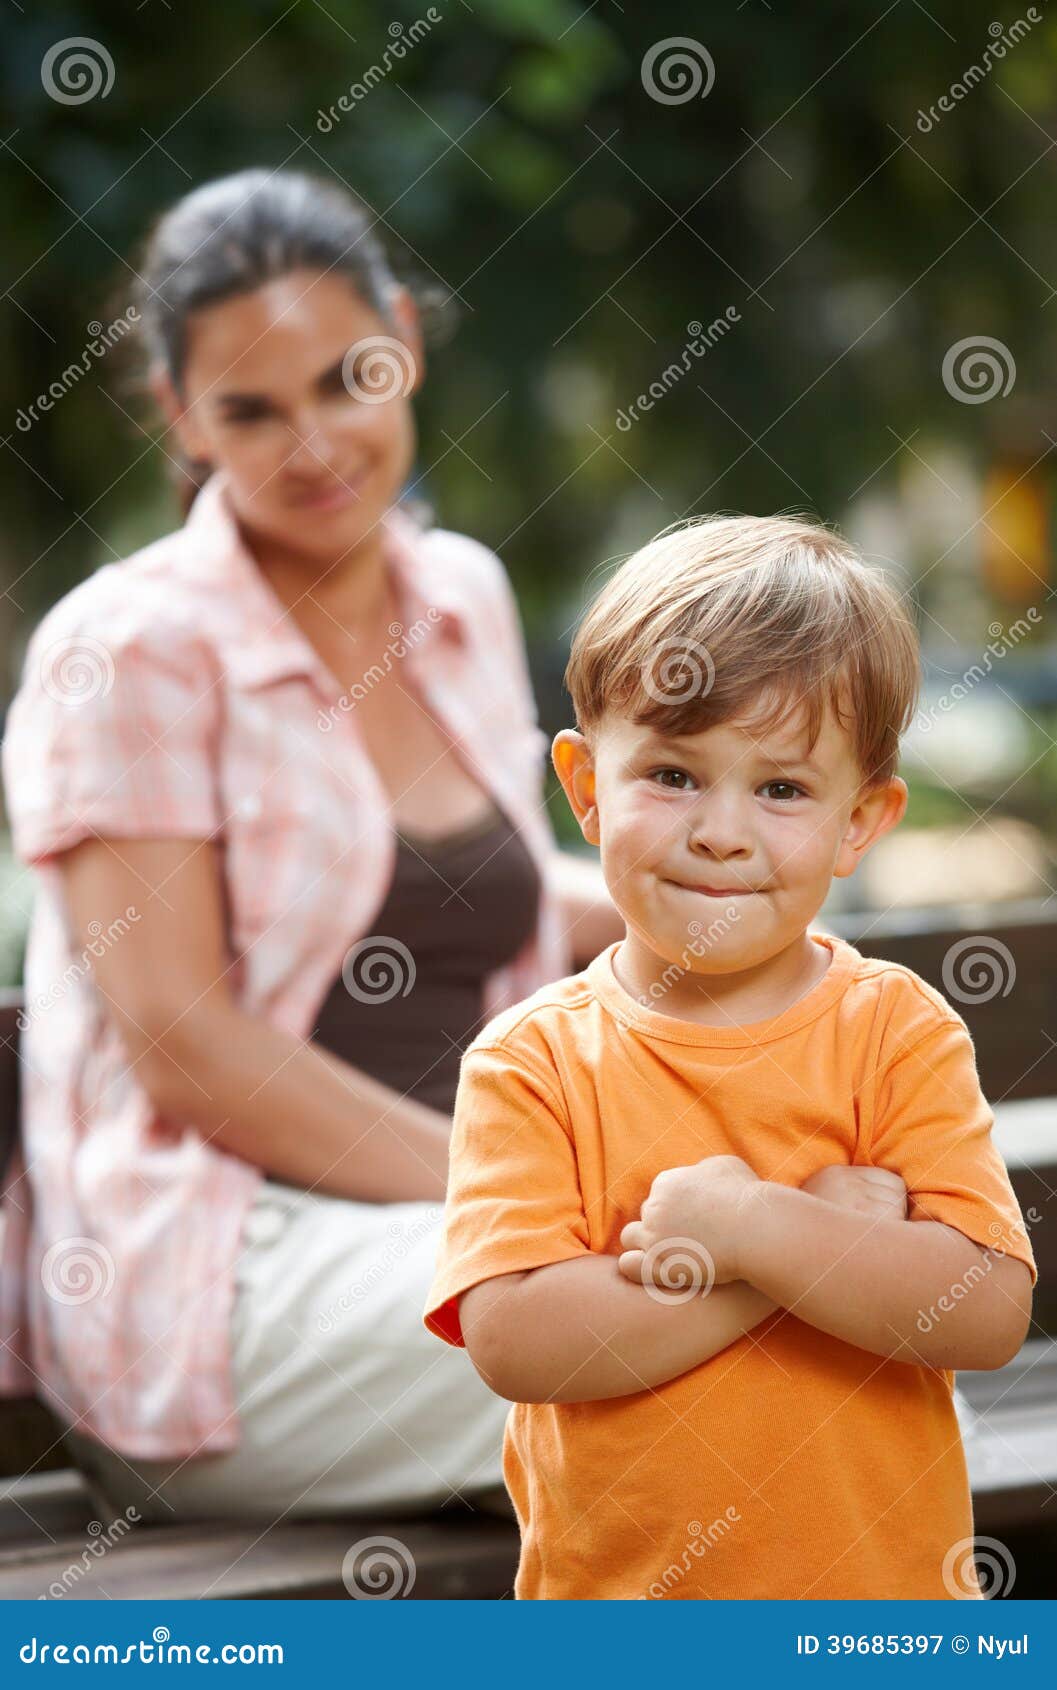 Kleiner Junge mit den stehenden Armen der Mutter gekreuzt. Kleiner glücklicher zufälliger kaukasischer Junge mit den stehenden Armen der Mutter gekreuzt. Elternteil im Hintergrund, lächelnd. Betrachten der Kamera.